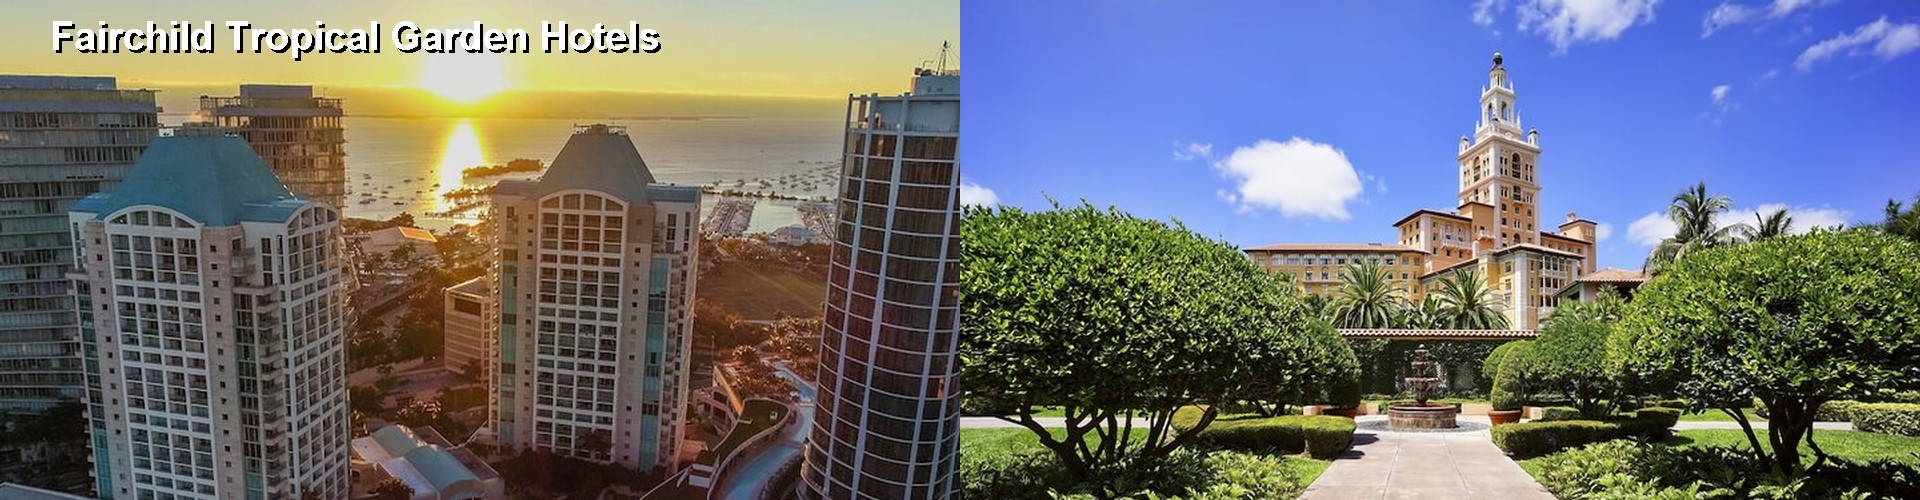 5 Best Hotels near Fairchild Tropical Garden